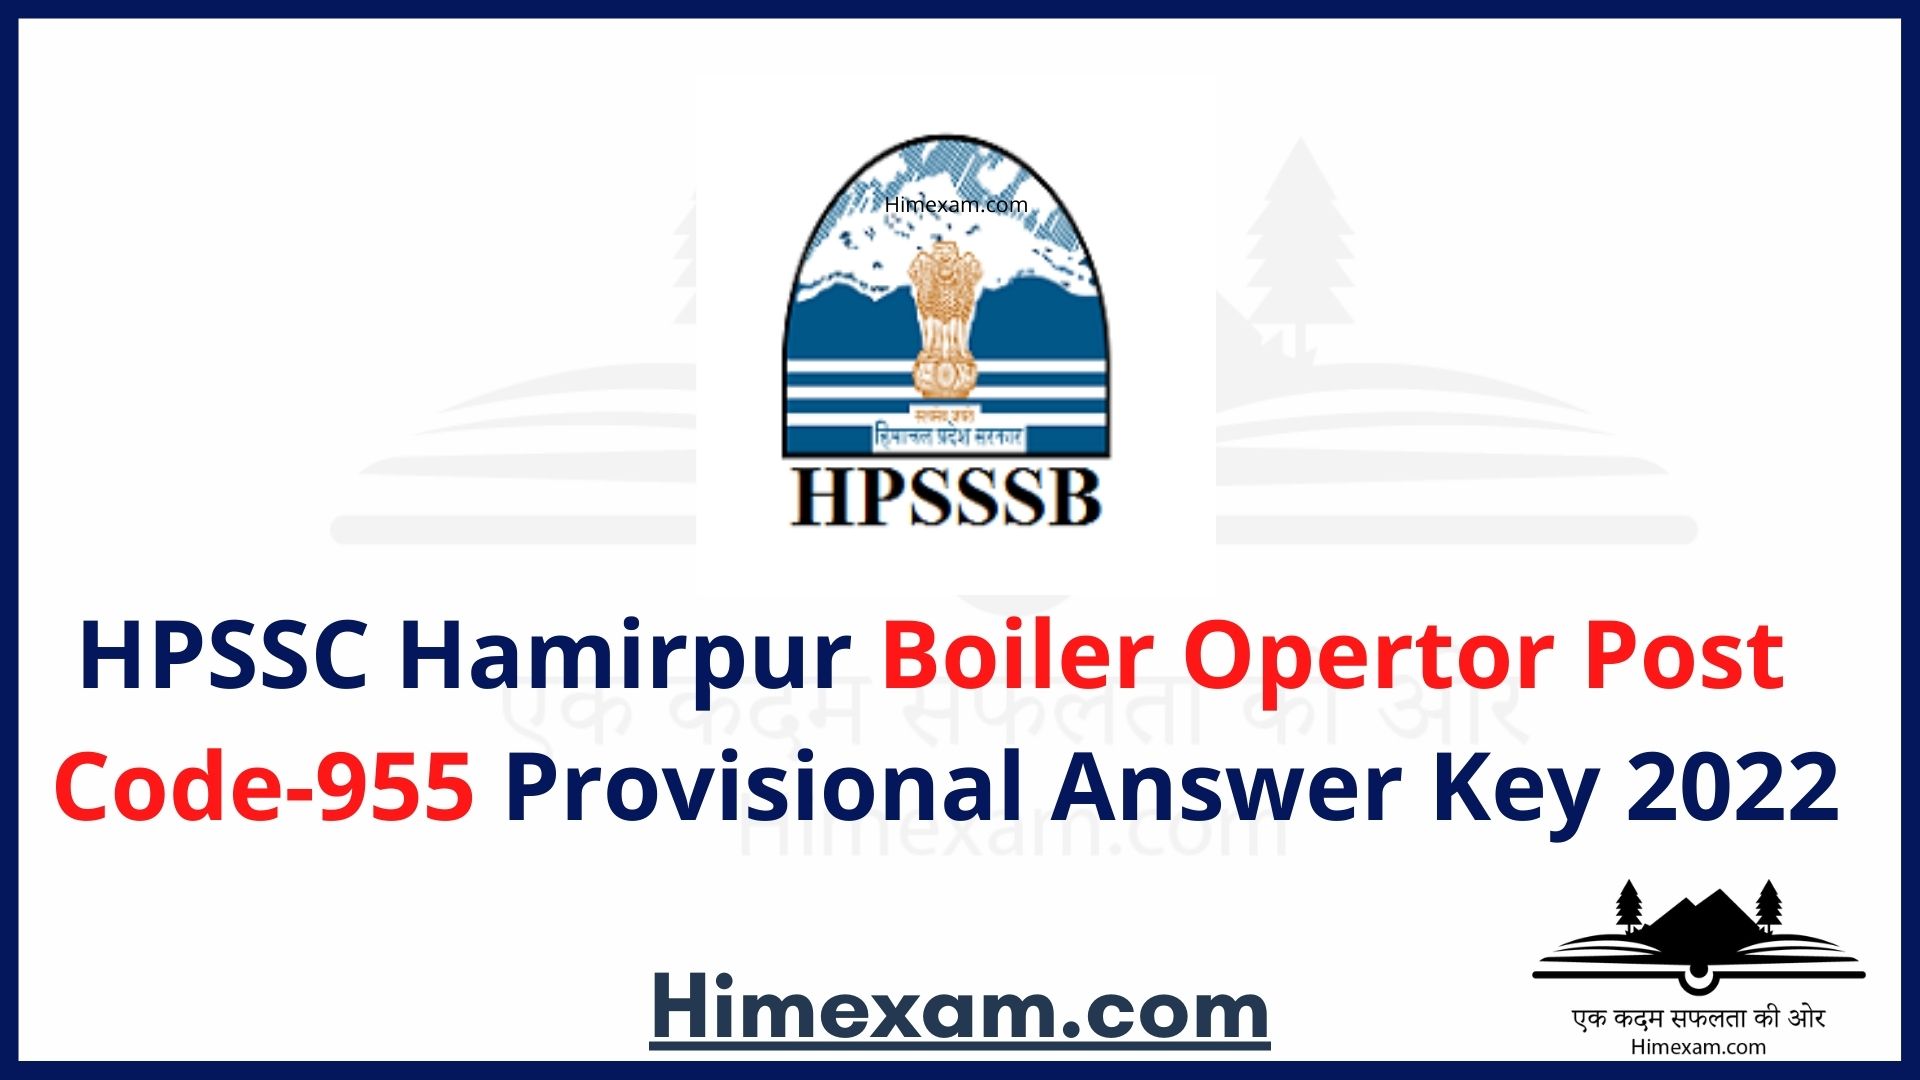 HPSSC Hamirpur Boiler Opertor Post Code-955 Provisional Answer Key 2022